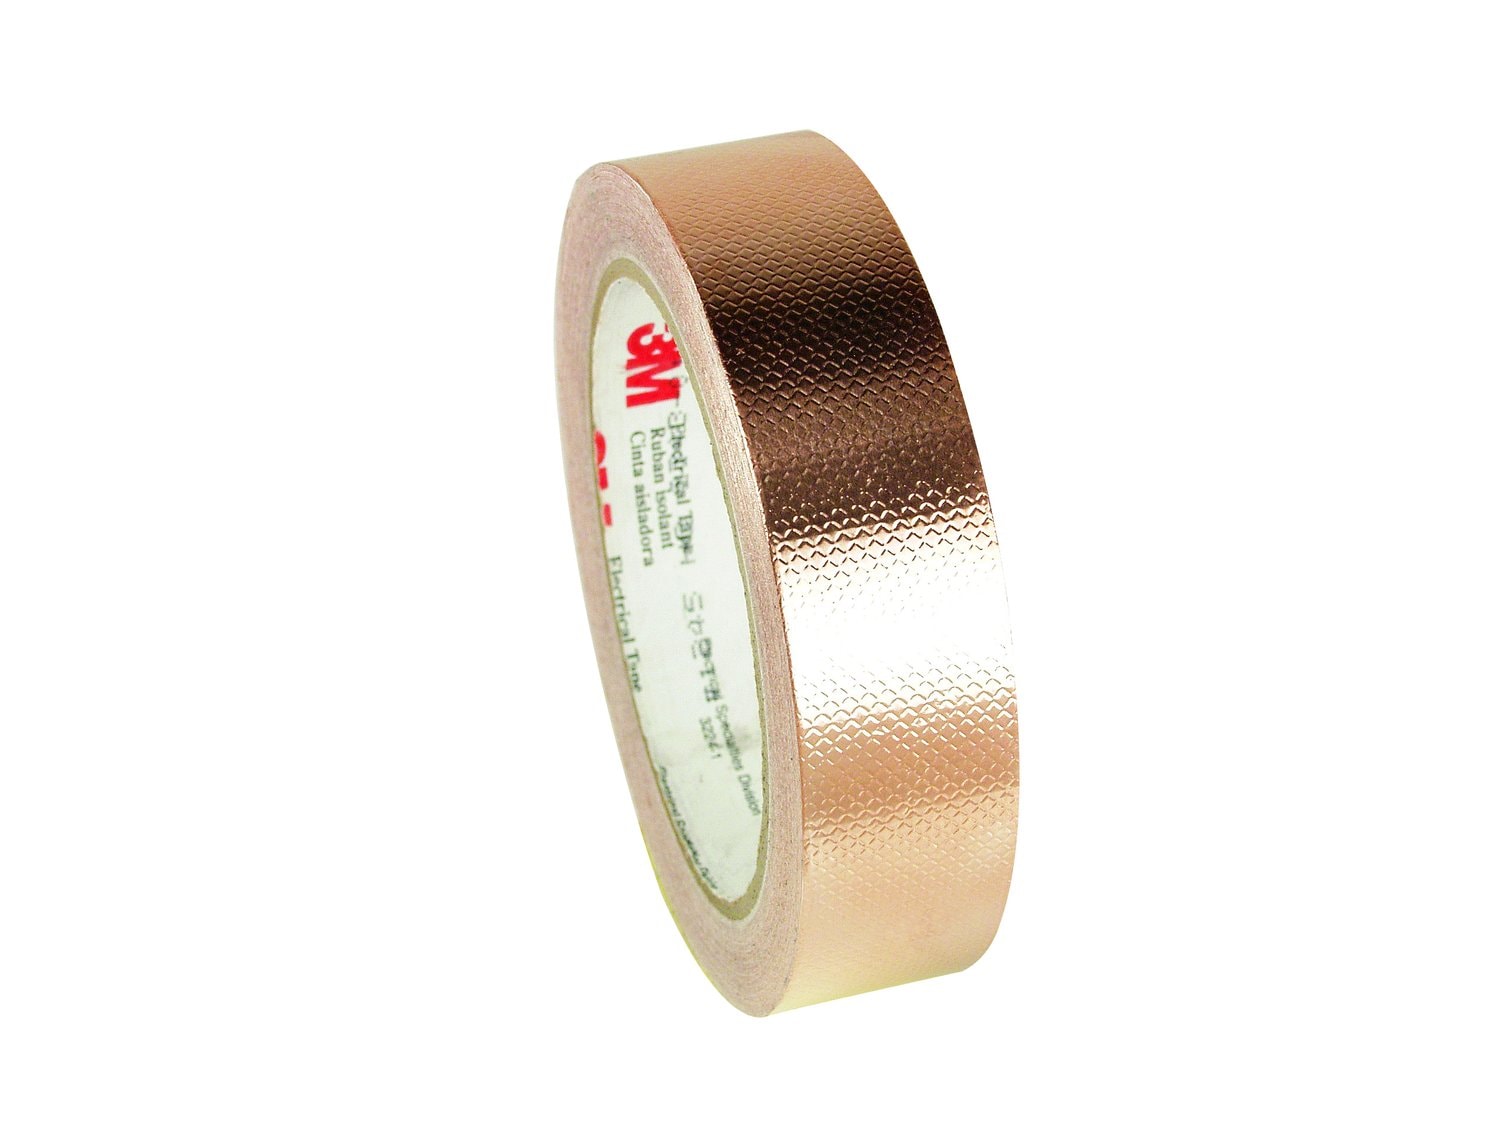 7100006347 - 3M Embossed Copper Foil EMI Shielding Tape 1245, 23 in x 8 yd, Log
Roll, 1 Roll/Case